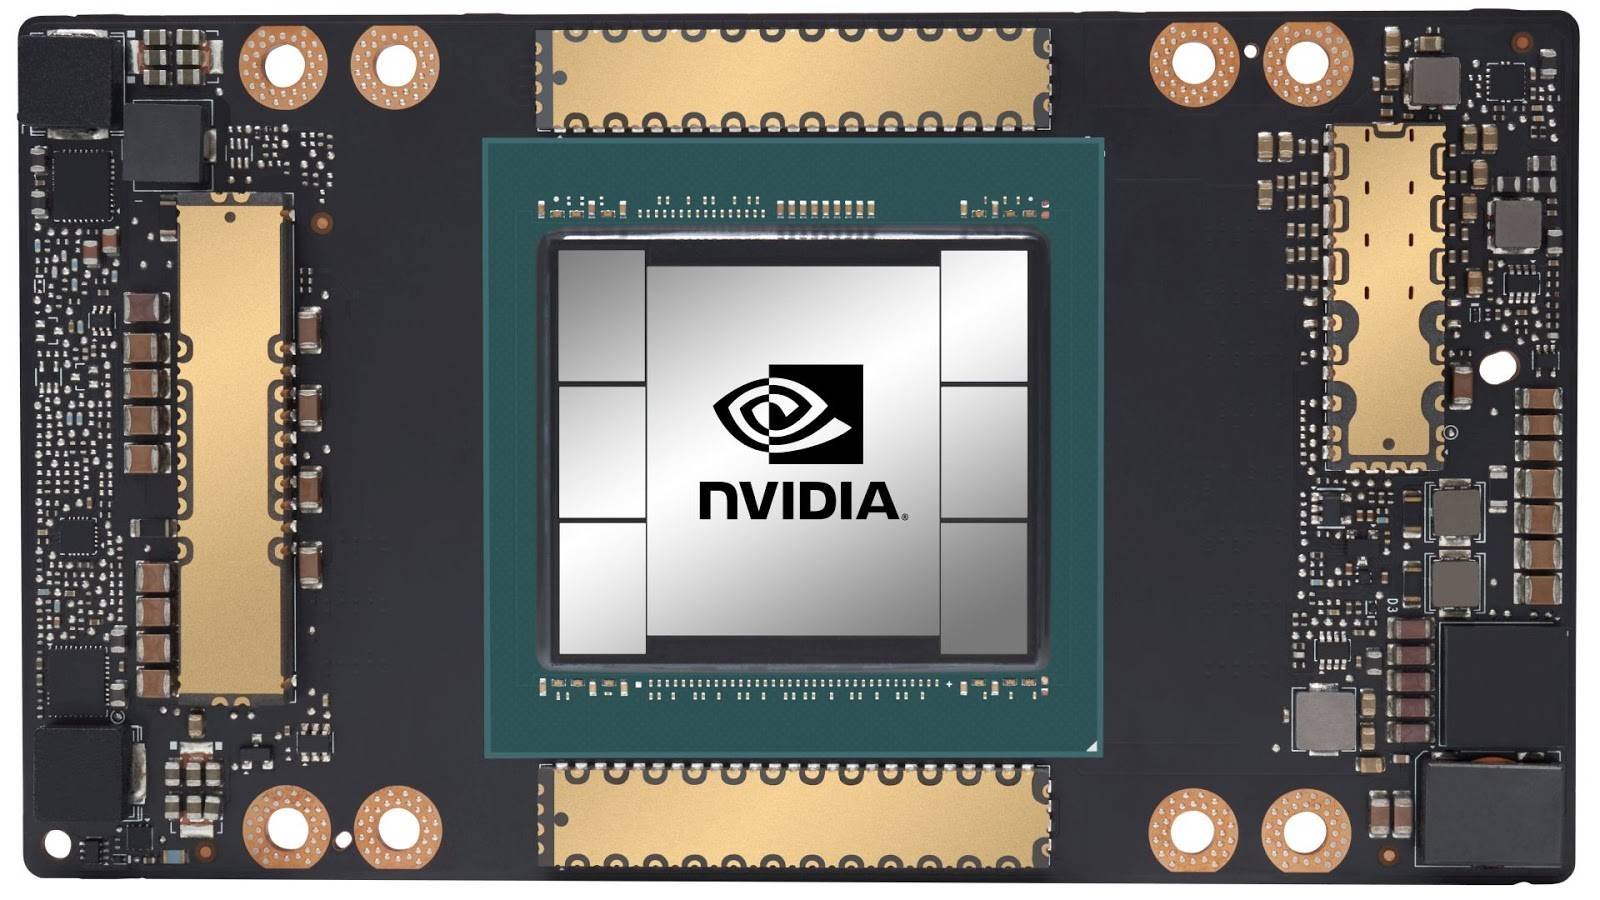 Immagine di NVIDIA, ecco le nuove schede grafiche A10 e A30 per AI, HPC e professionisti